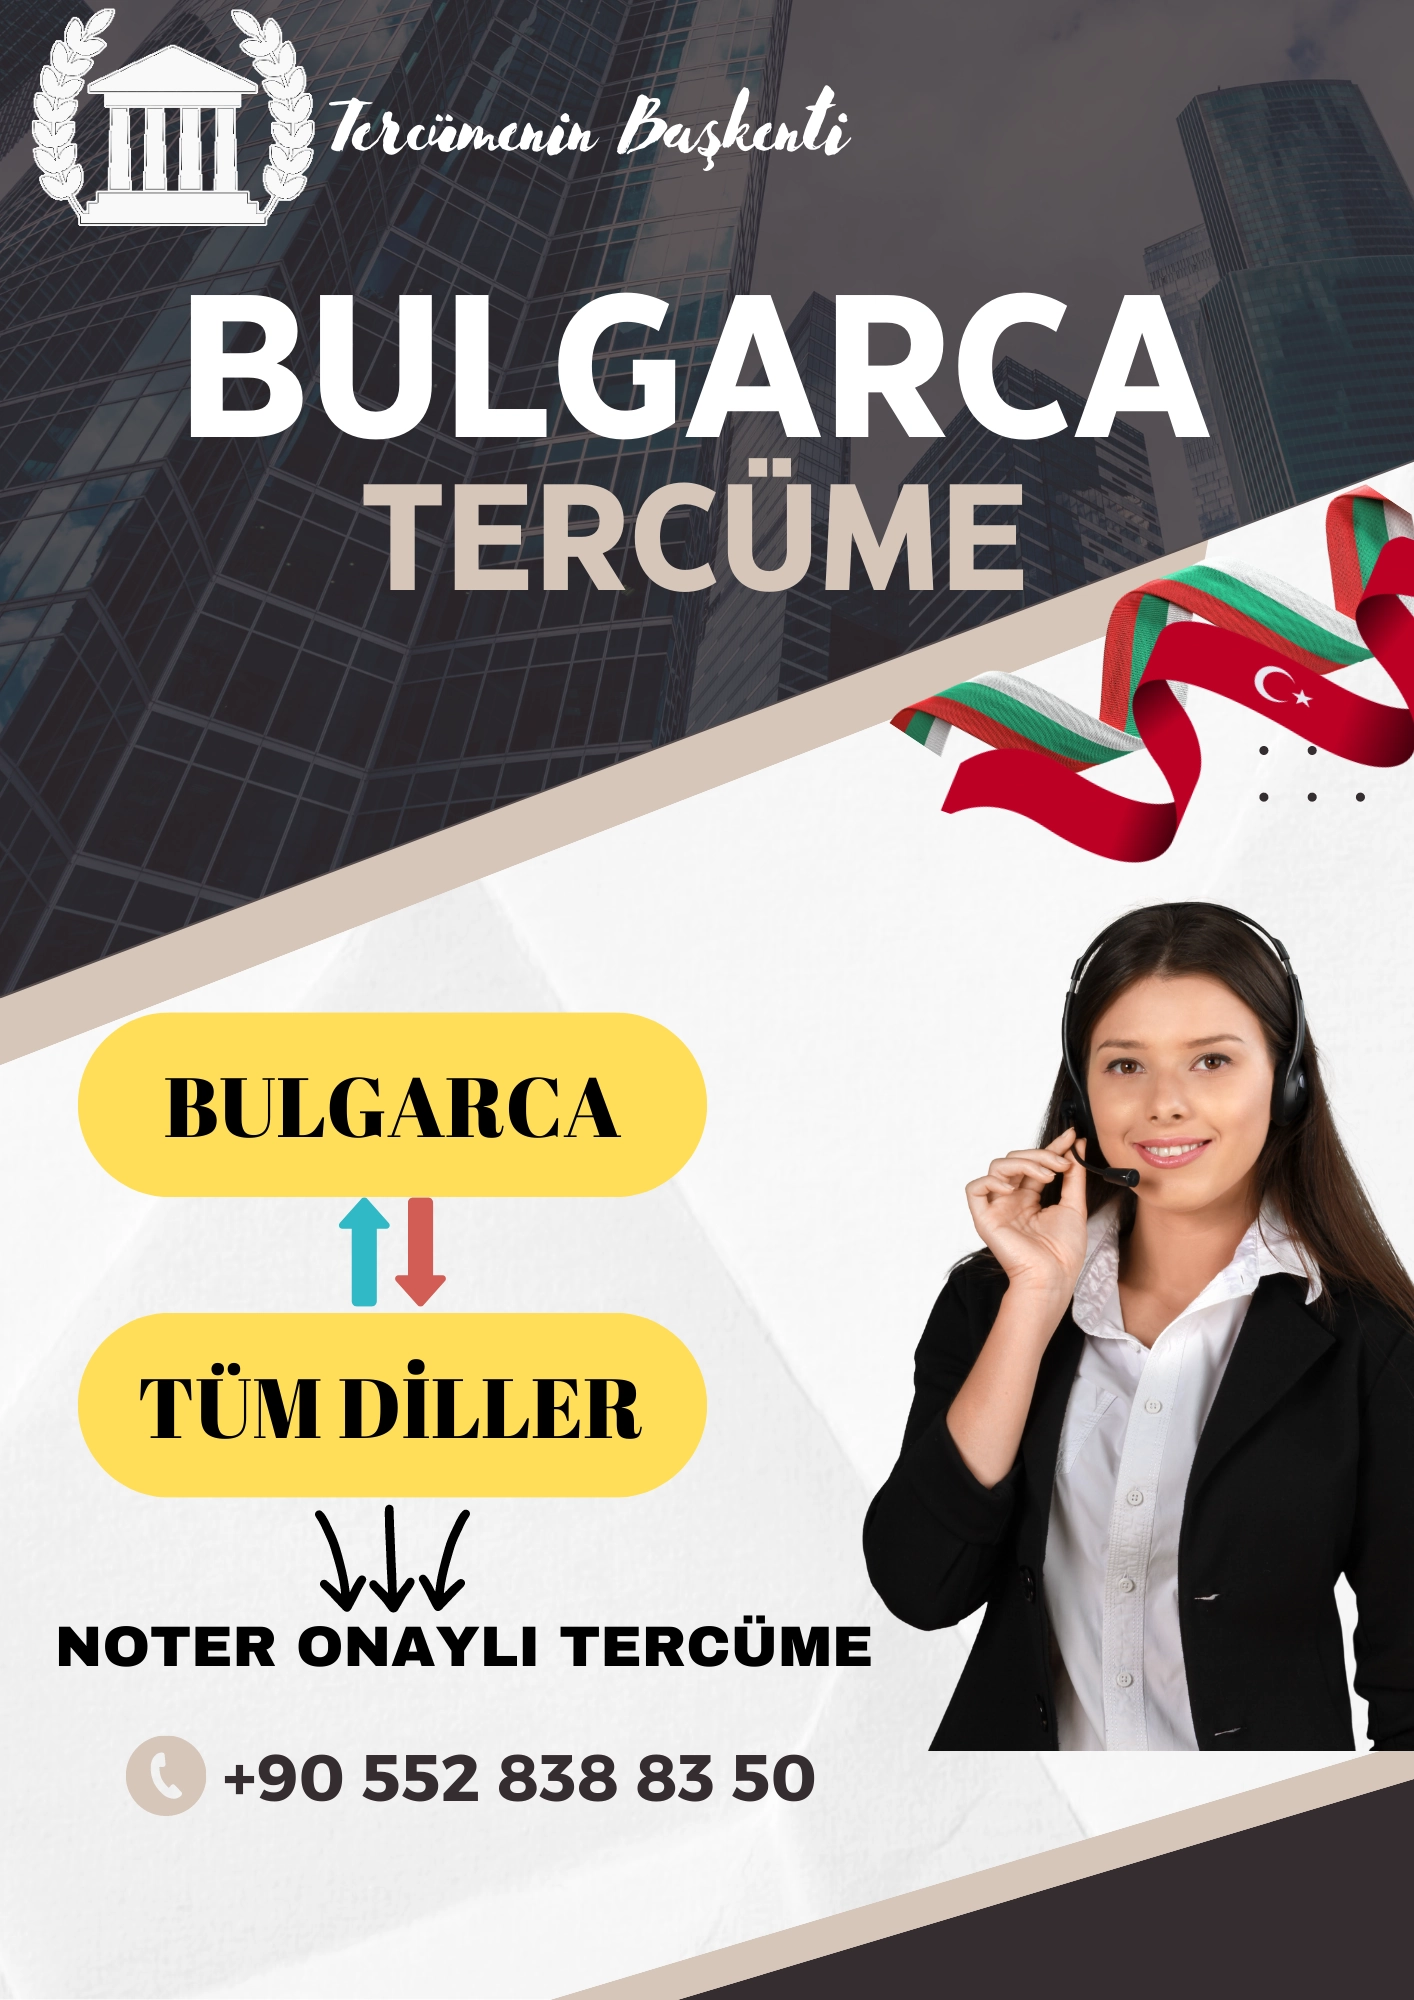 bulgarca tercüme, bulgarca tercüman